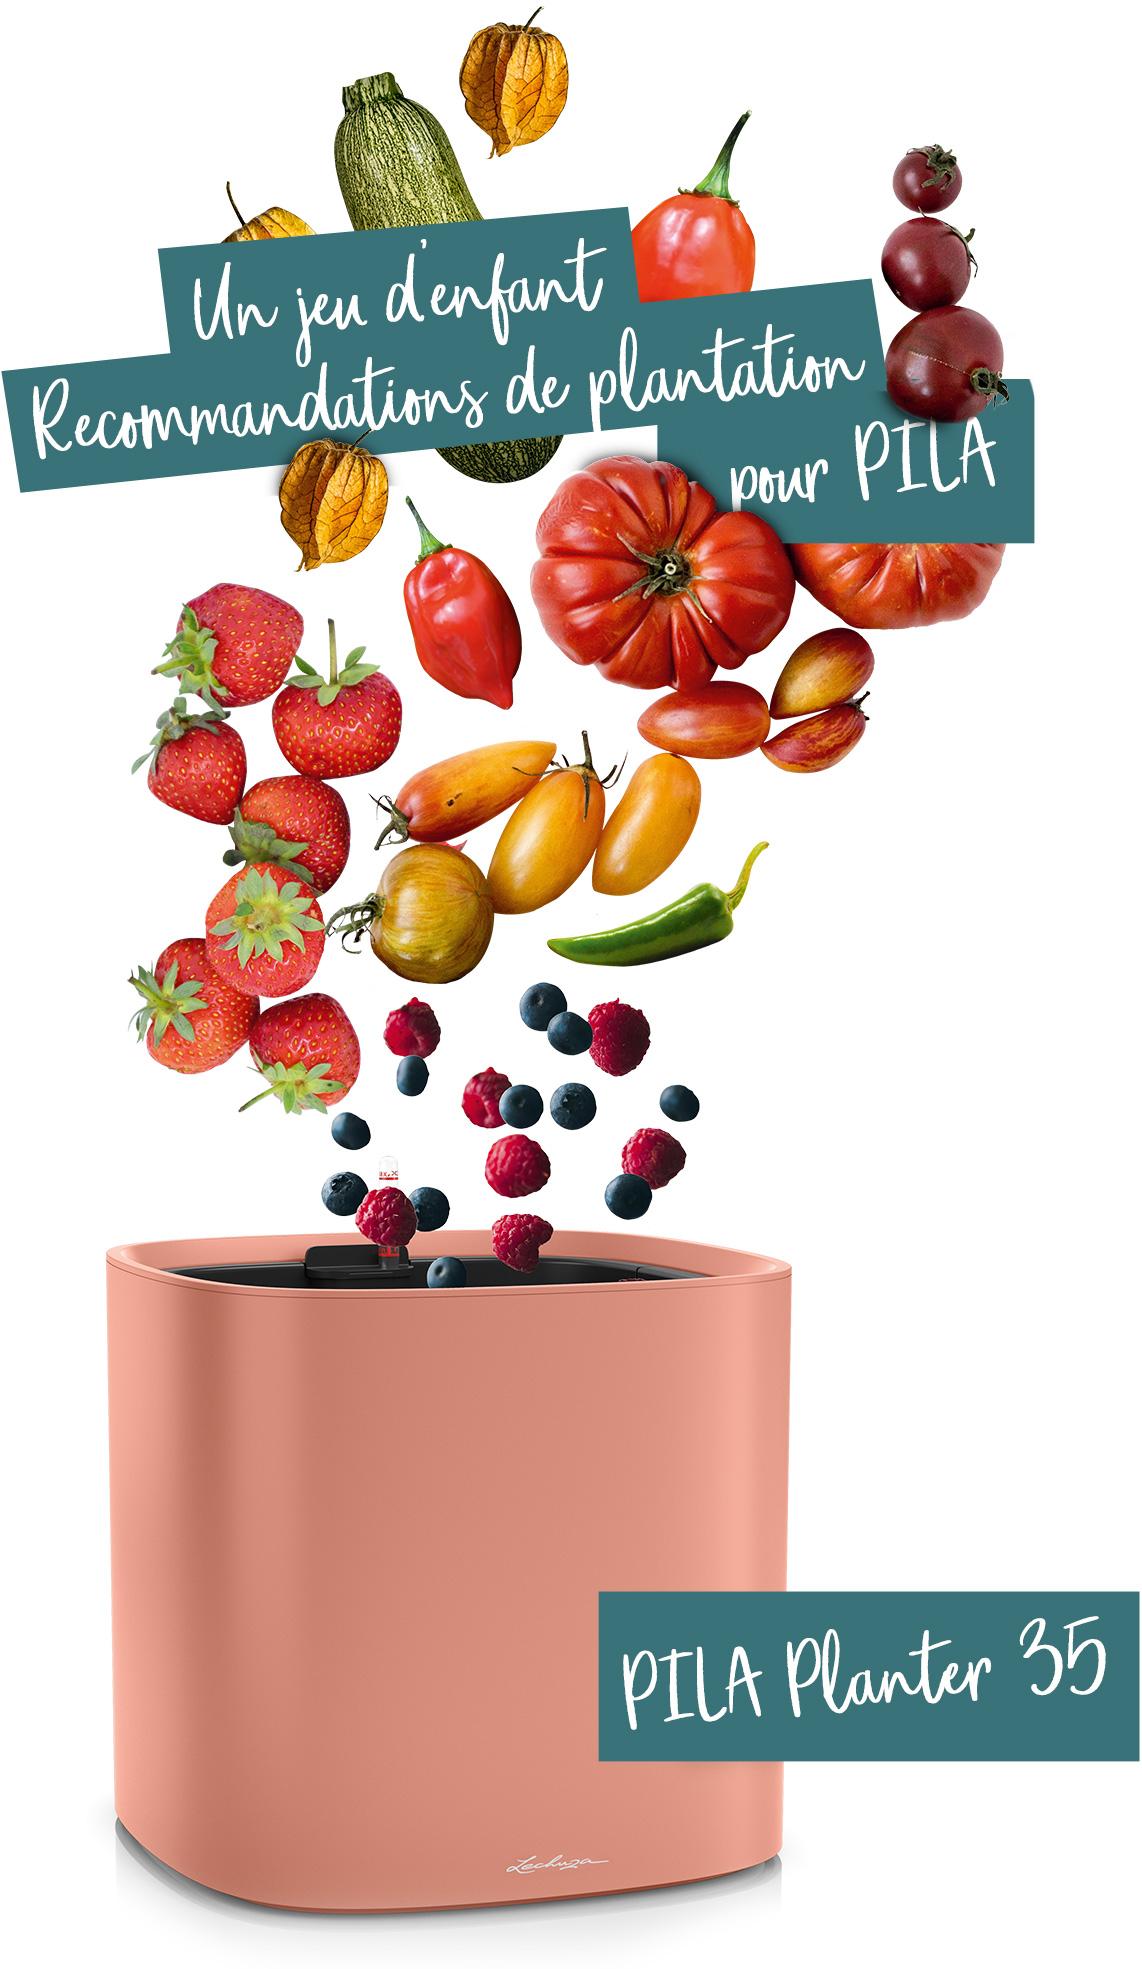 PILA Planter 35 recommandé pour les fruits et légumes